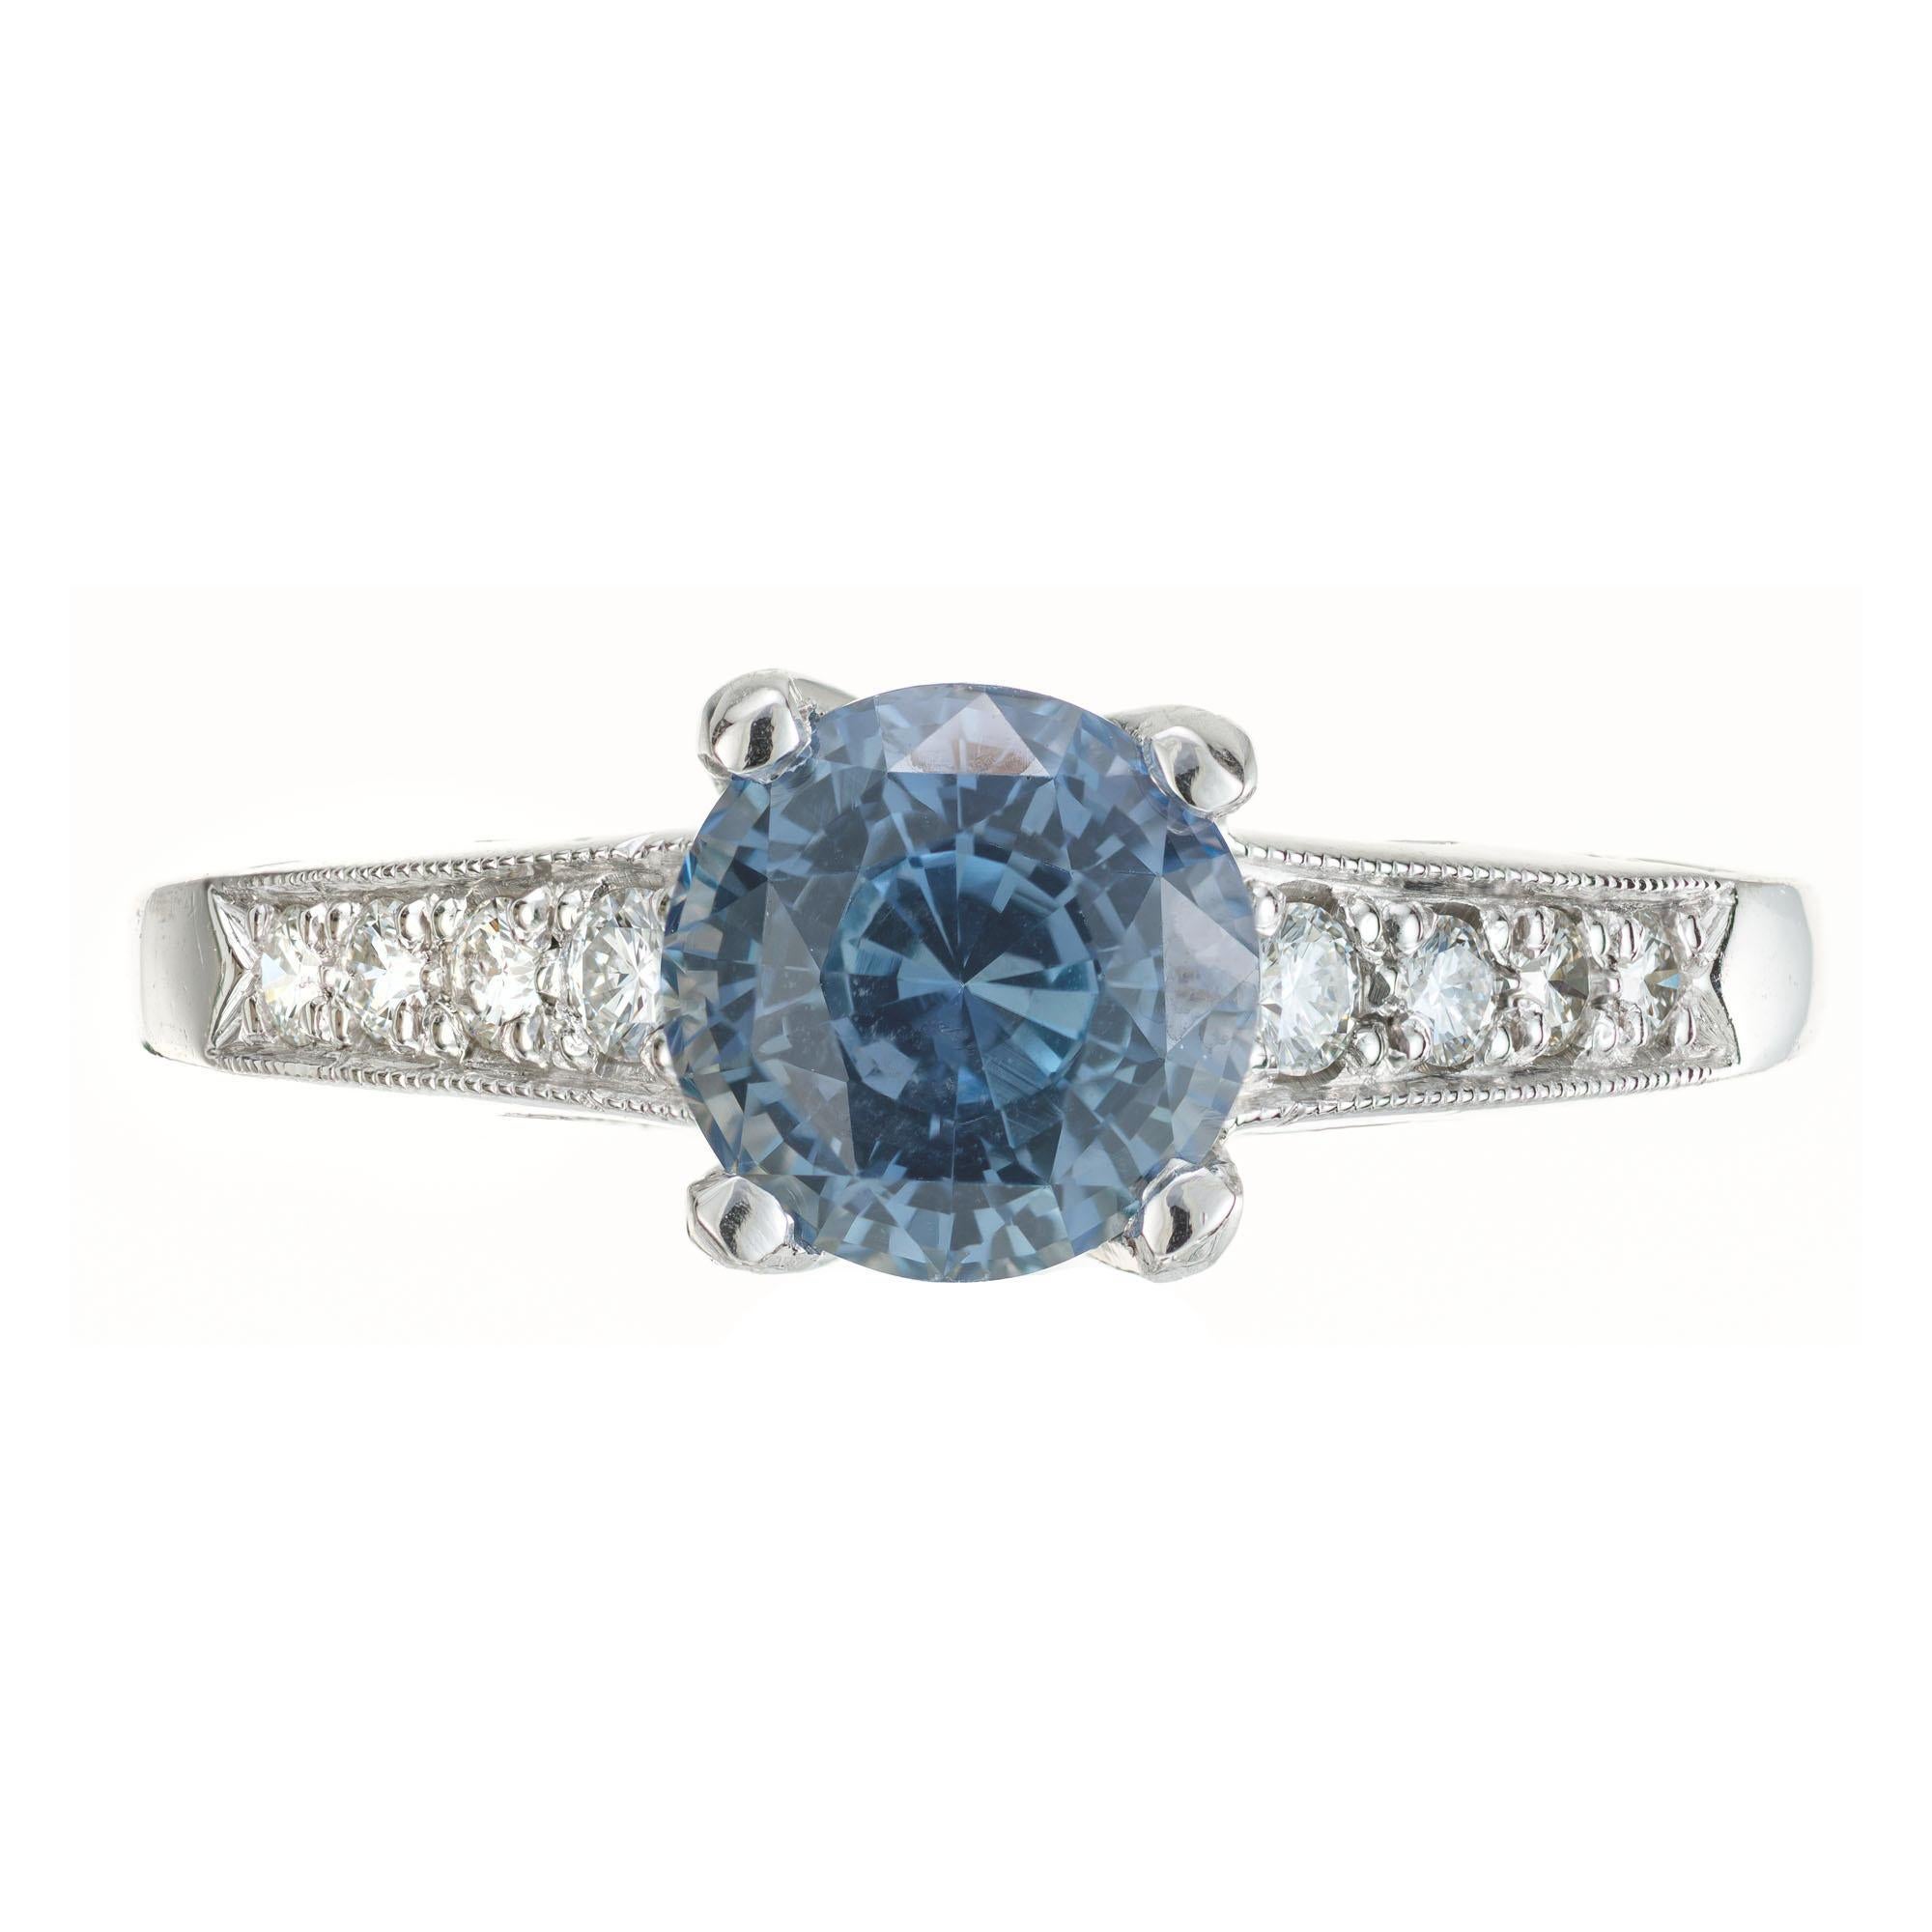 Authentischer signierter Krementz Verlobungsring mit Saphir und Diamant. GIA-zertifizierter blauer Saphir in einer Platinfassung mit 40 runden Diamanten im Brillantschliff als Akzent. Gewölbte Zacken an den Seiten und abgestufte Pflastersteine an